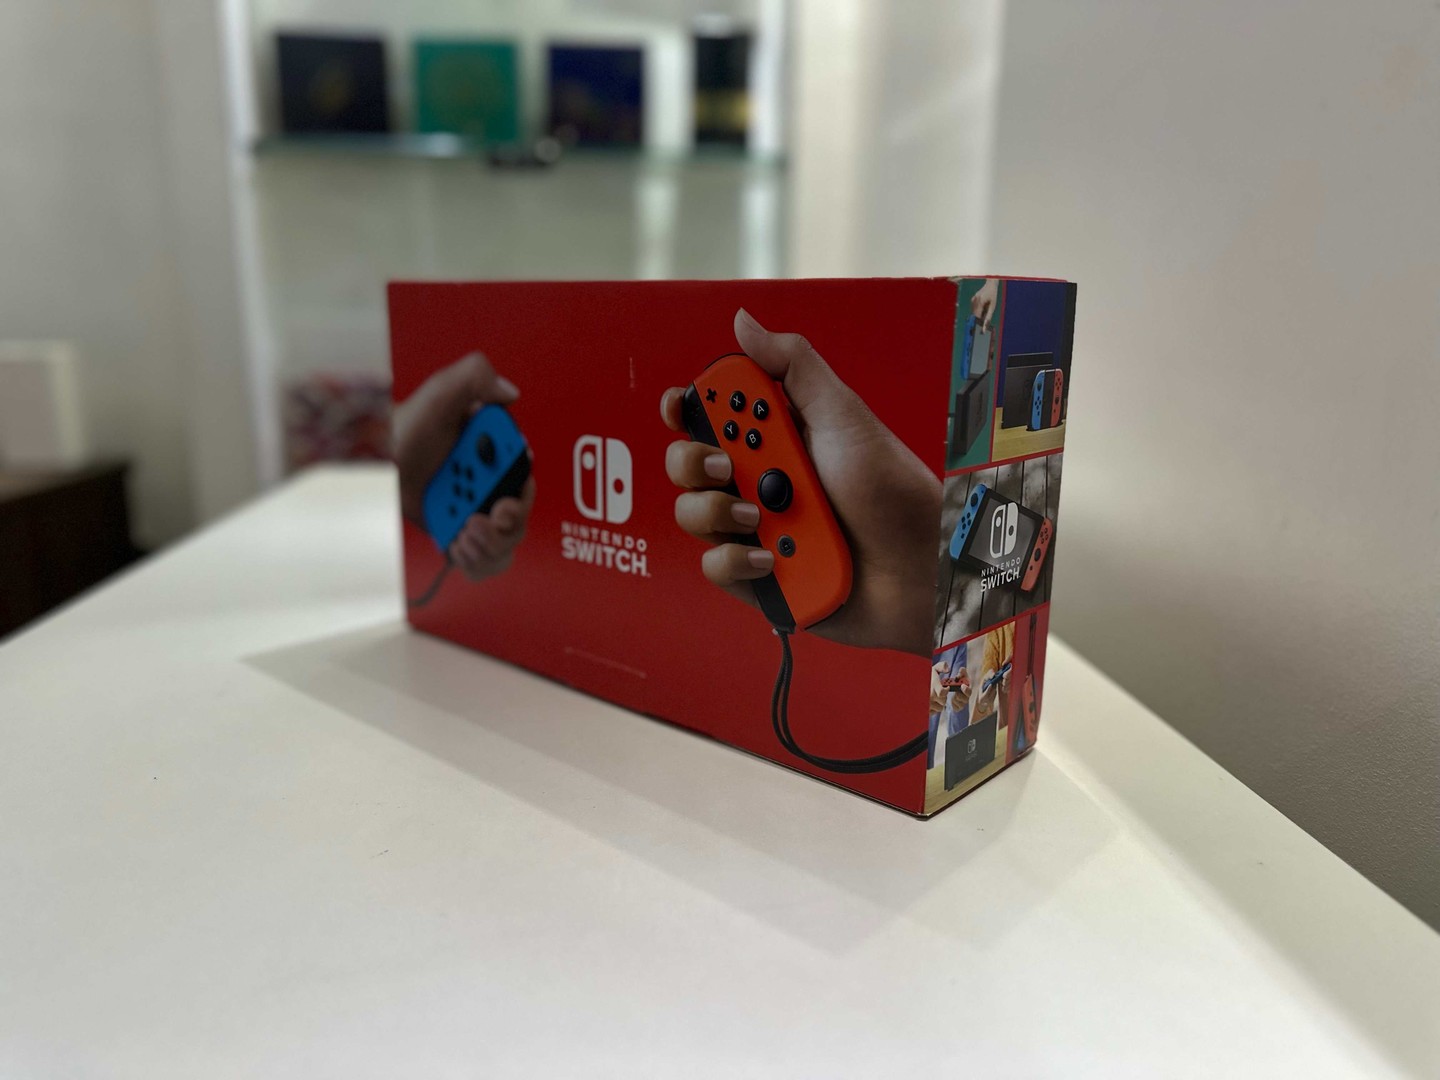 consolas y videojuegos - Nintendo Switch v2 Nuevo Sellado en Caja, + Accesorios, Garantía RD$ 16,300 NEG 1